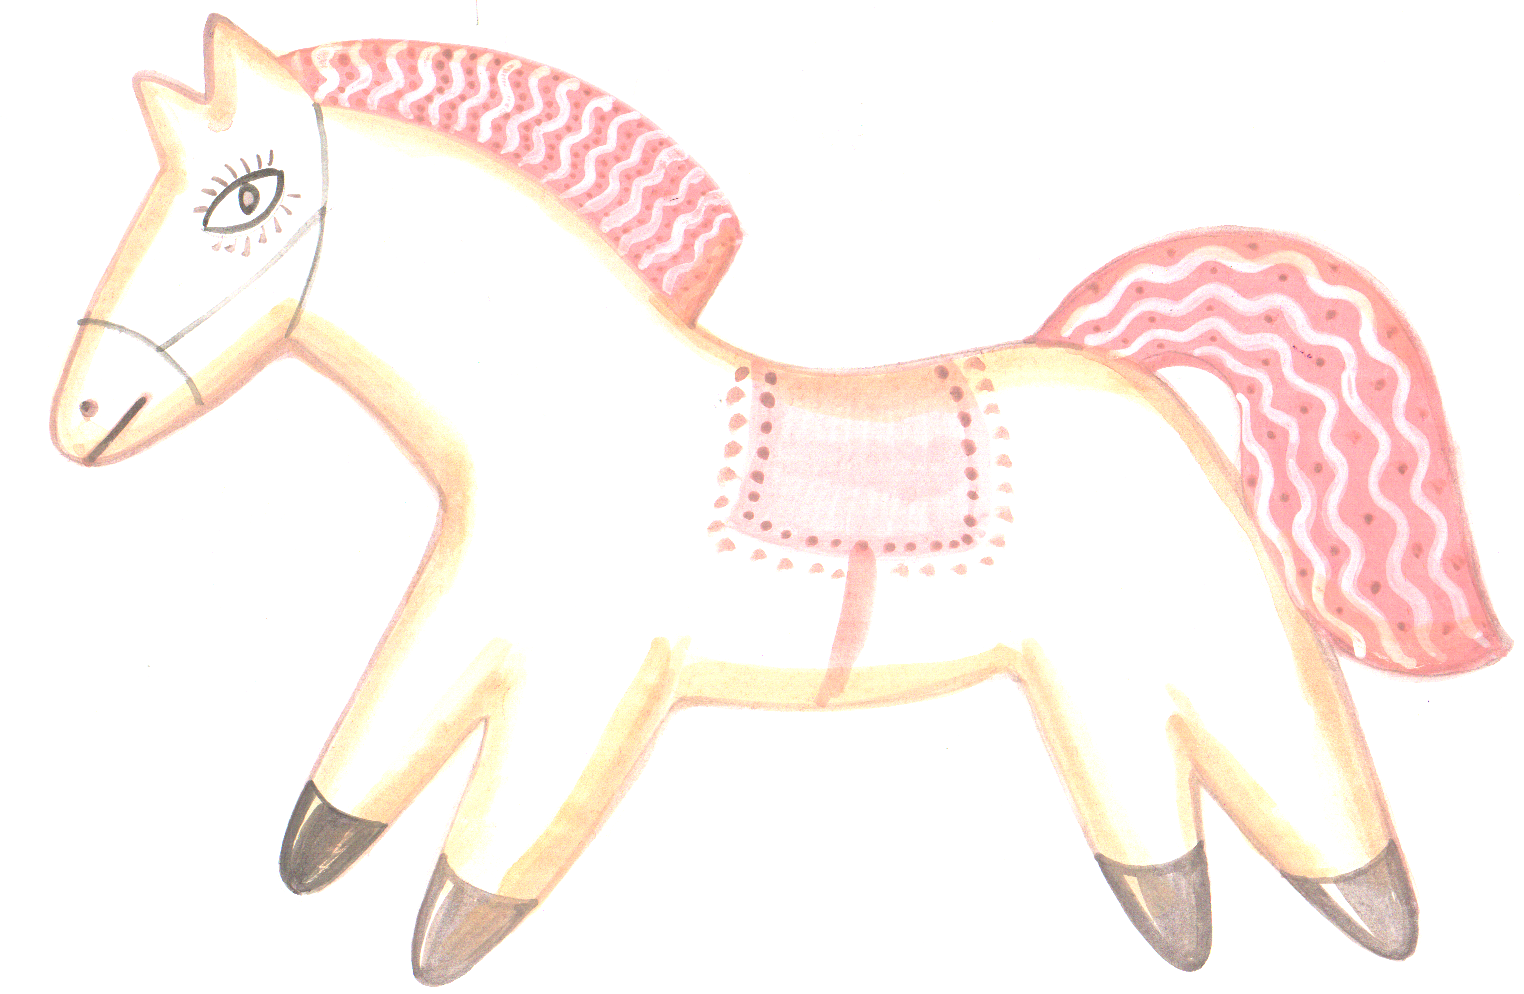 Астафьев конь с розовой гривой пряник. Розовый пряник Астафьев. Астафьев конь с розовой гривой иллюстрации. Астафьев пряник с розовой гривой.